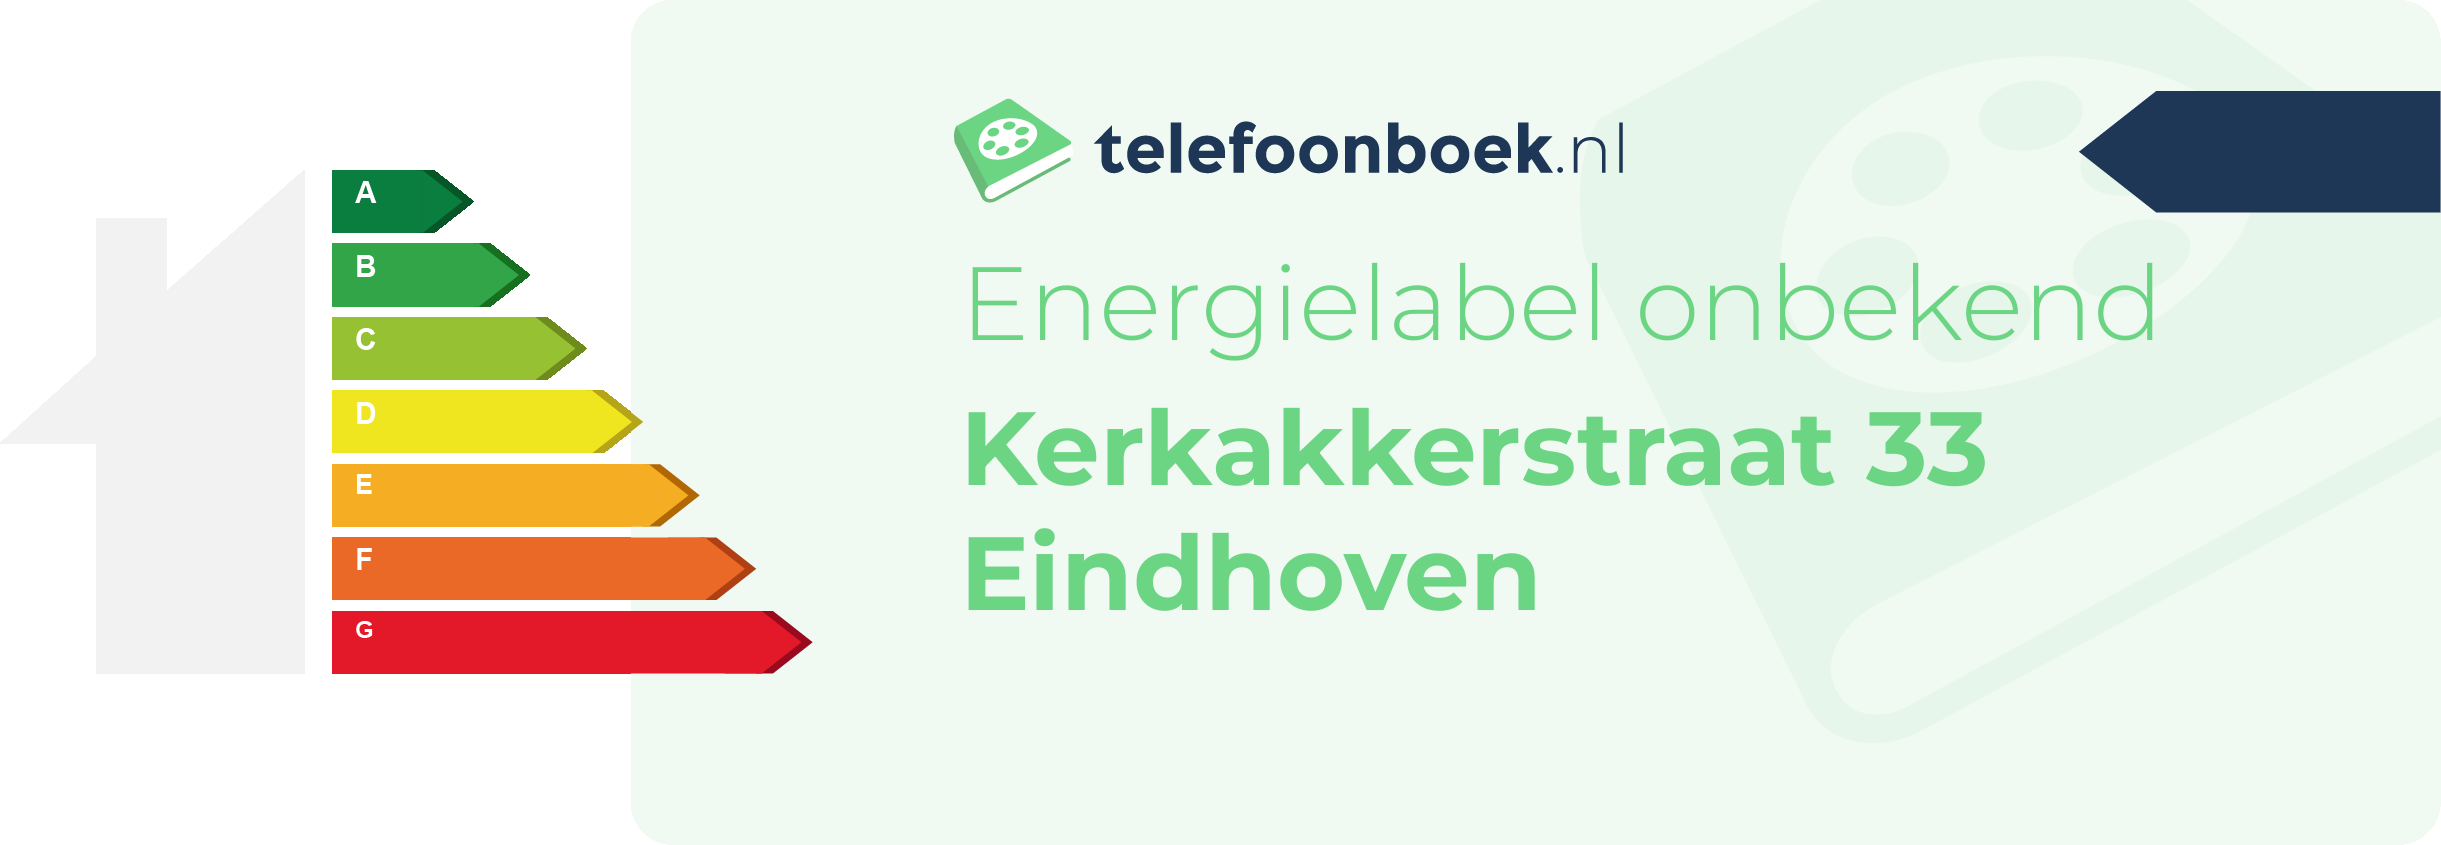 Energielabel Kerkakkerstraat 33 Eindhoven